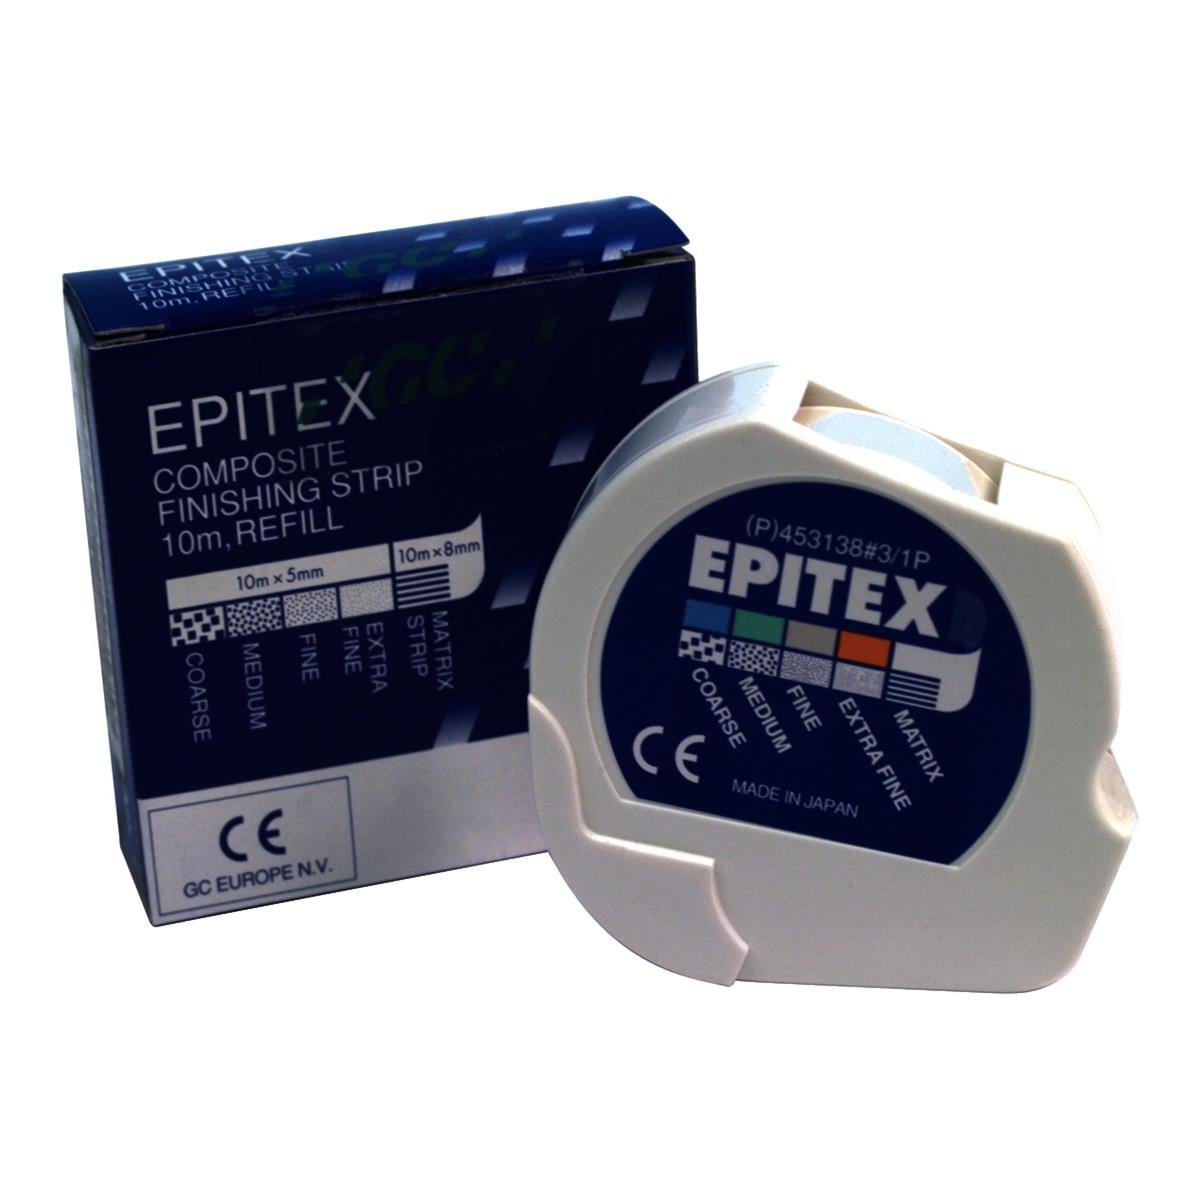 Epitex Matrix Strips 10m x 8mm Roll